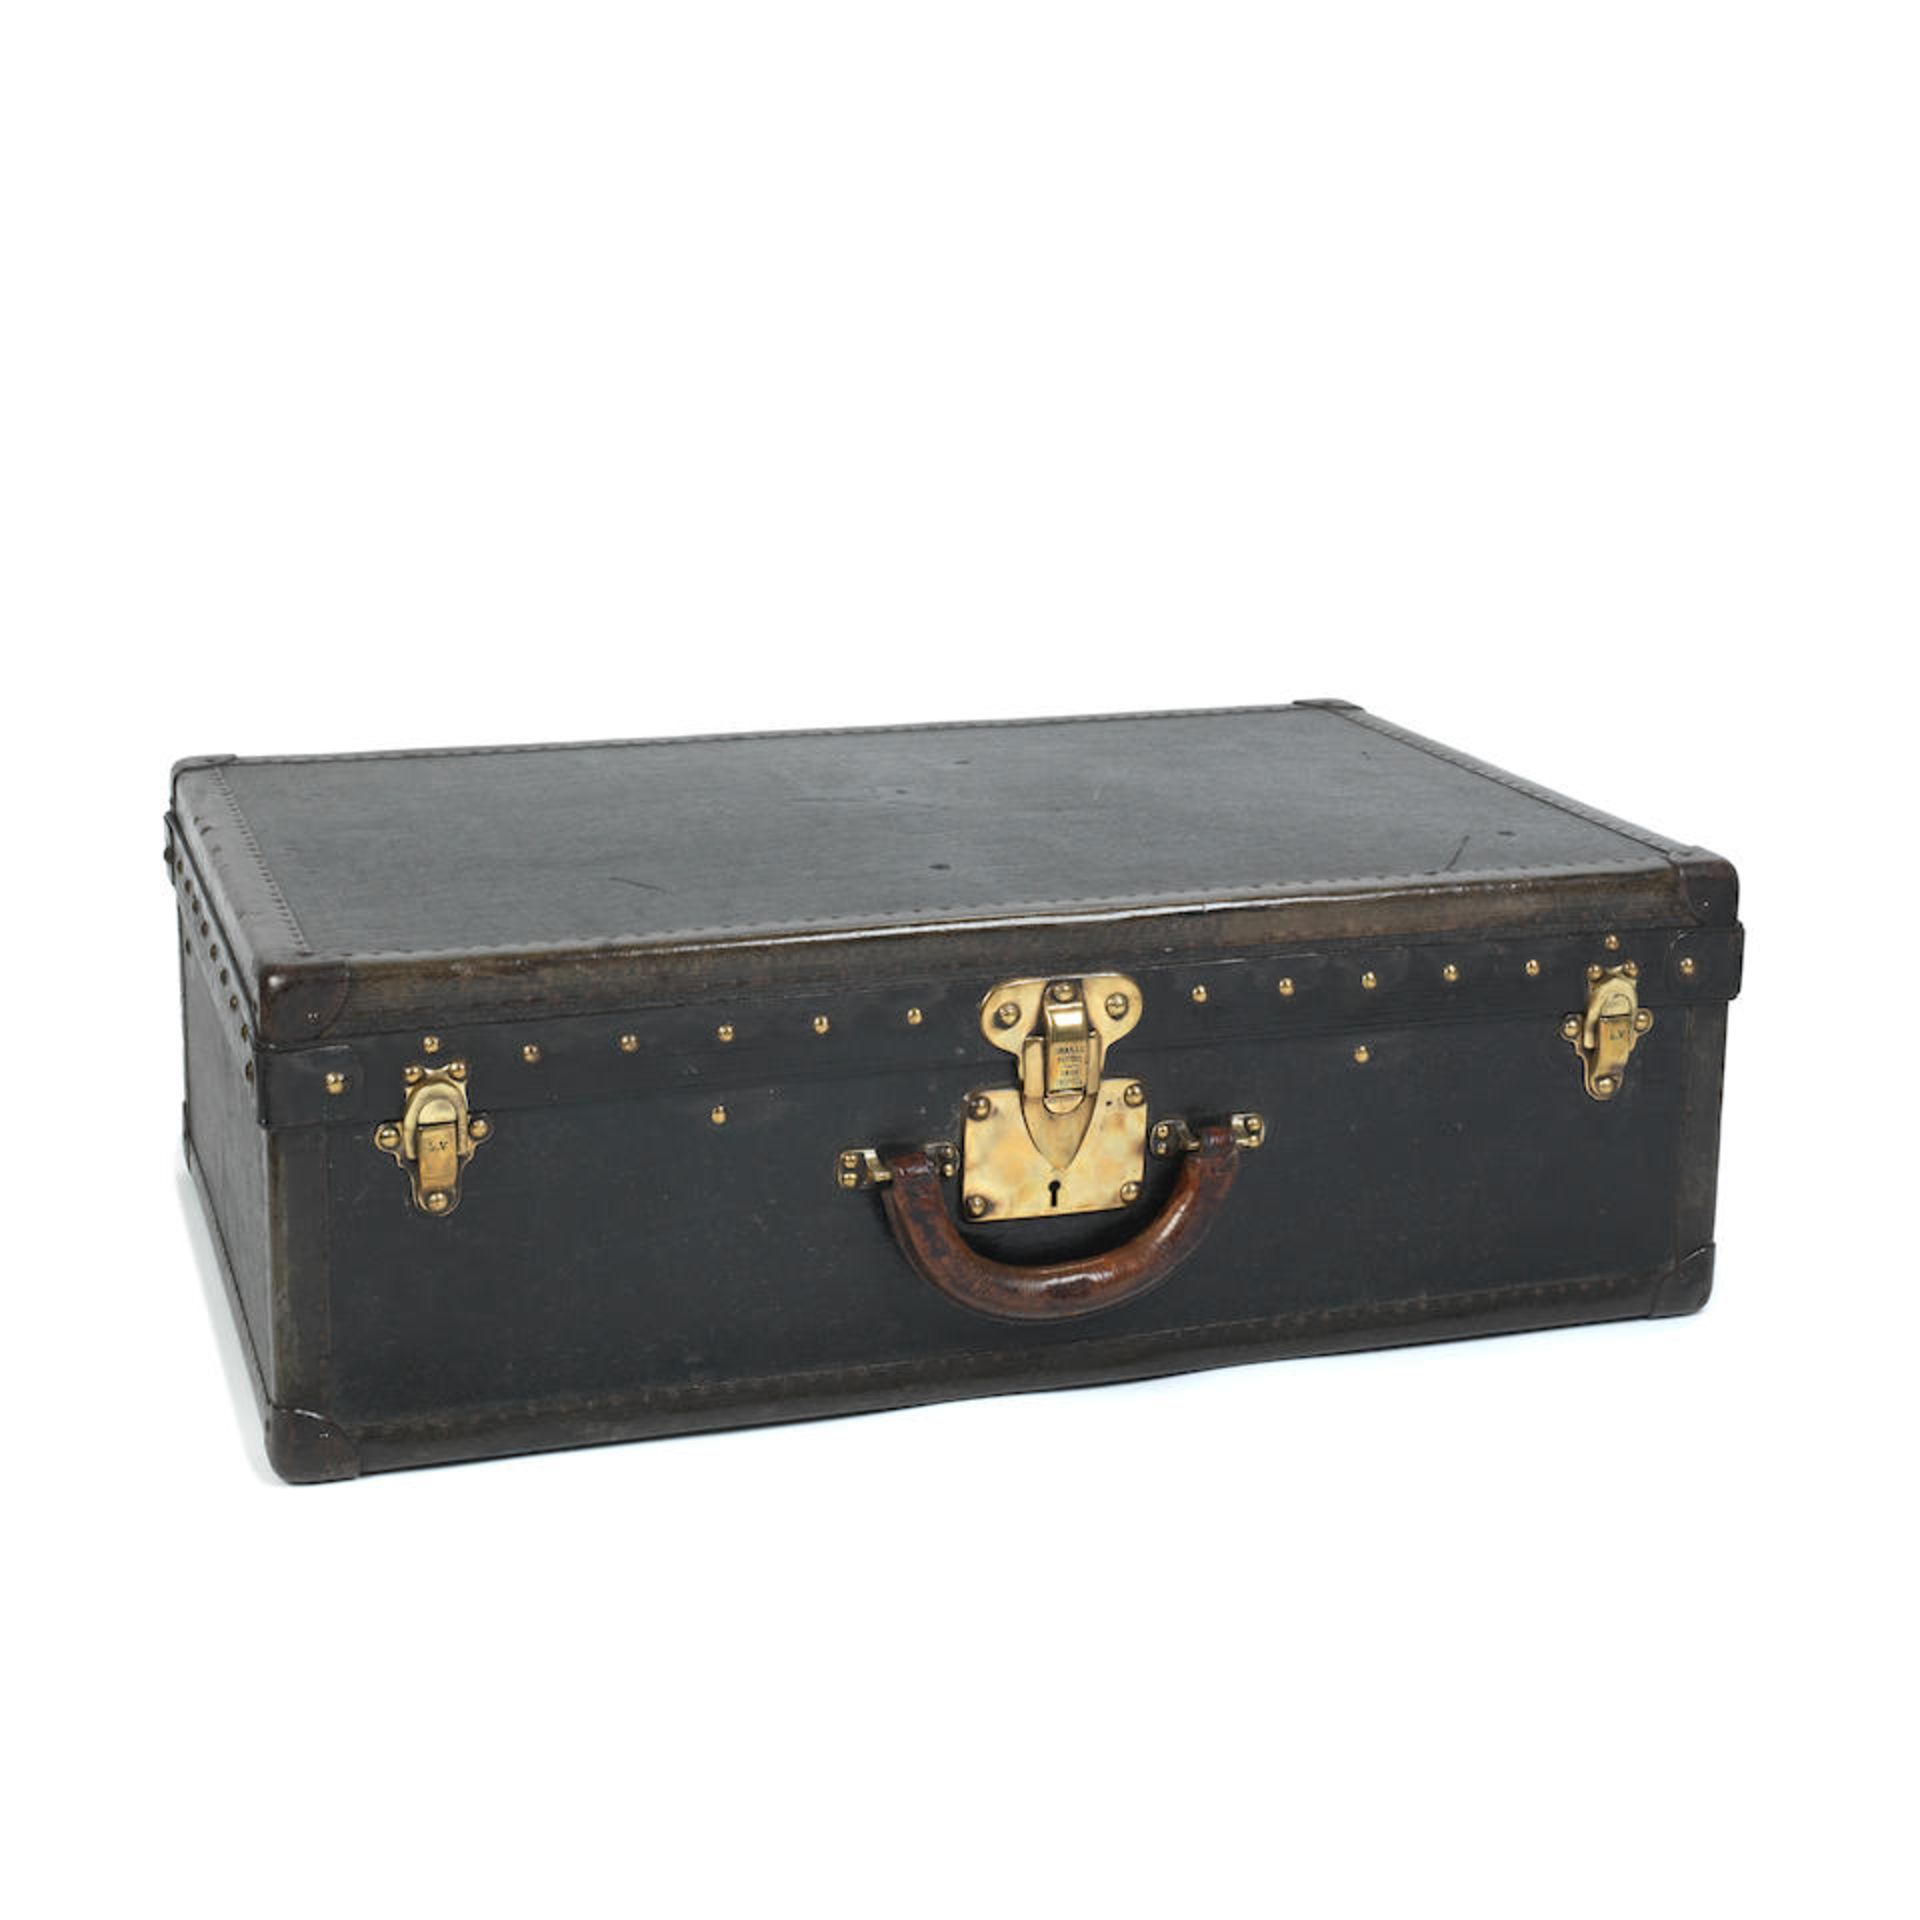 Louis Vuitton: a Black Vuittonite Alzer 65 Suitcase 1920s - Image 3 of 5